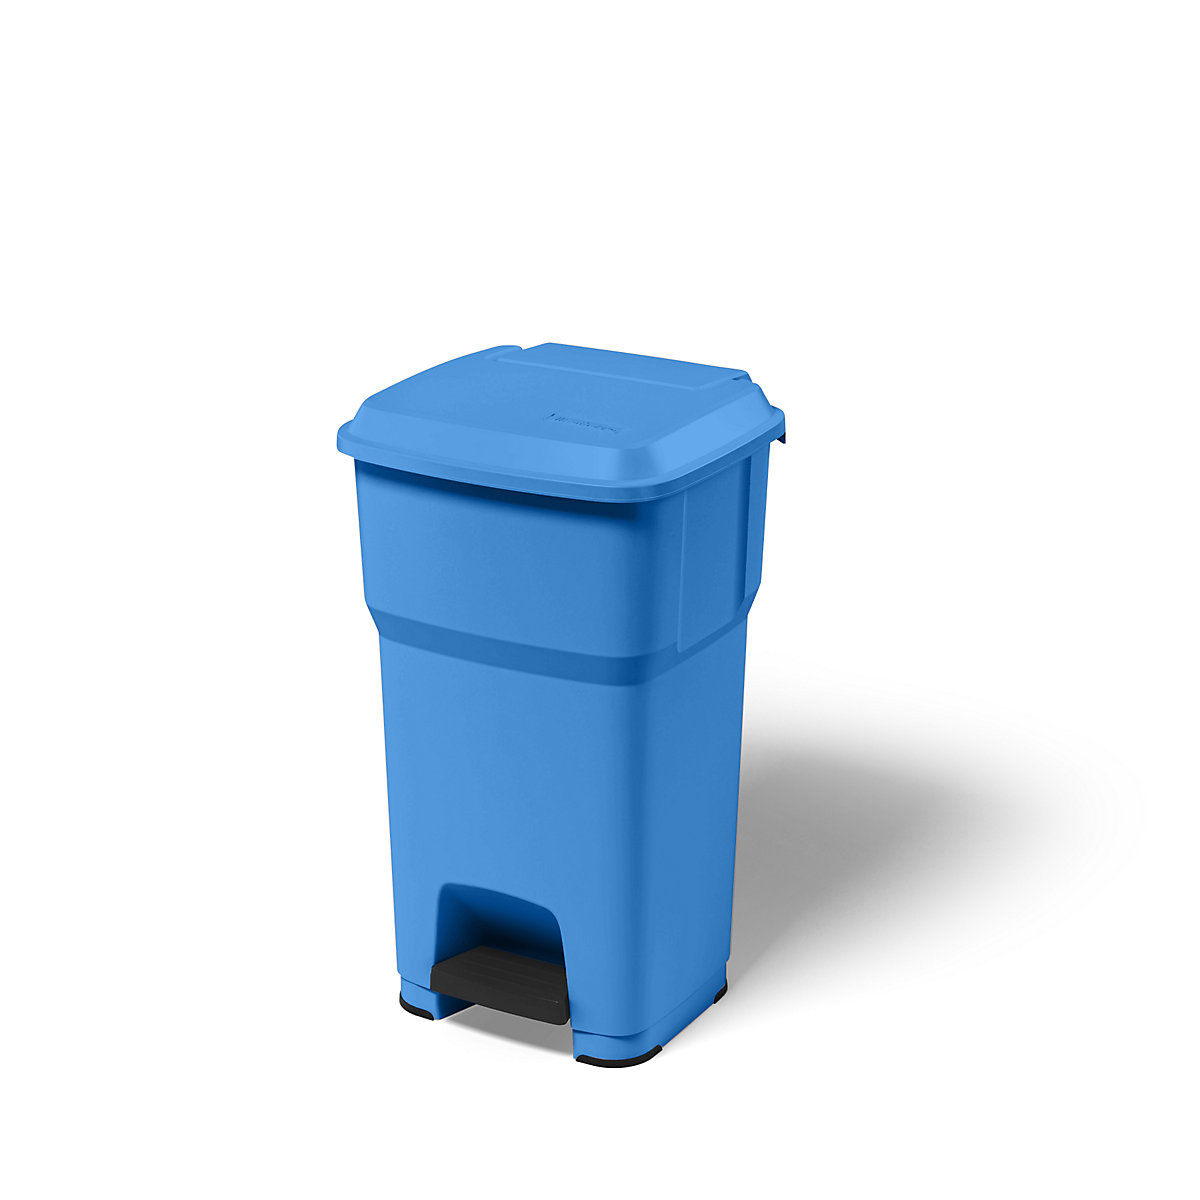 Zberač odpadkov s pedálom HERA – rothopro, objem 60 l, š x v x h 390 x 690 x 390 mm, modrá-6